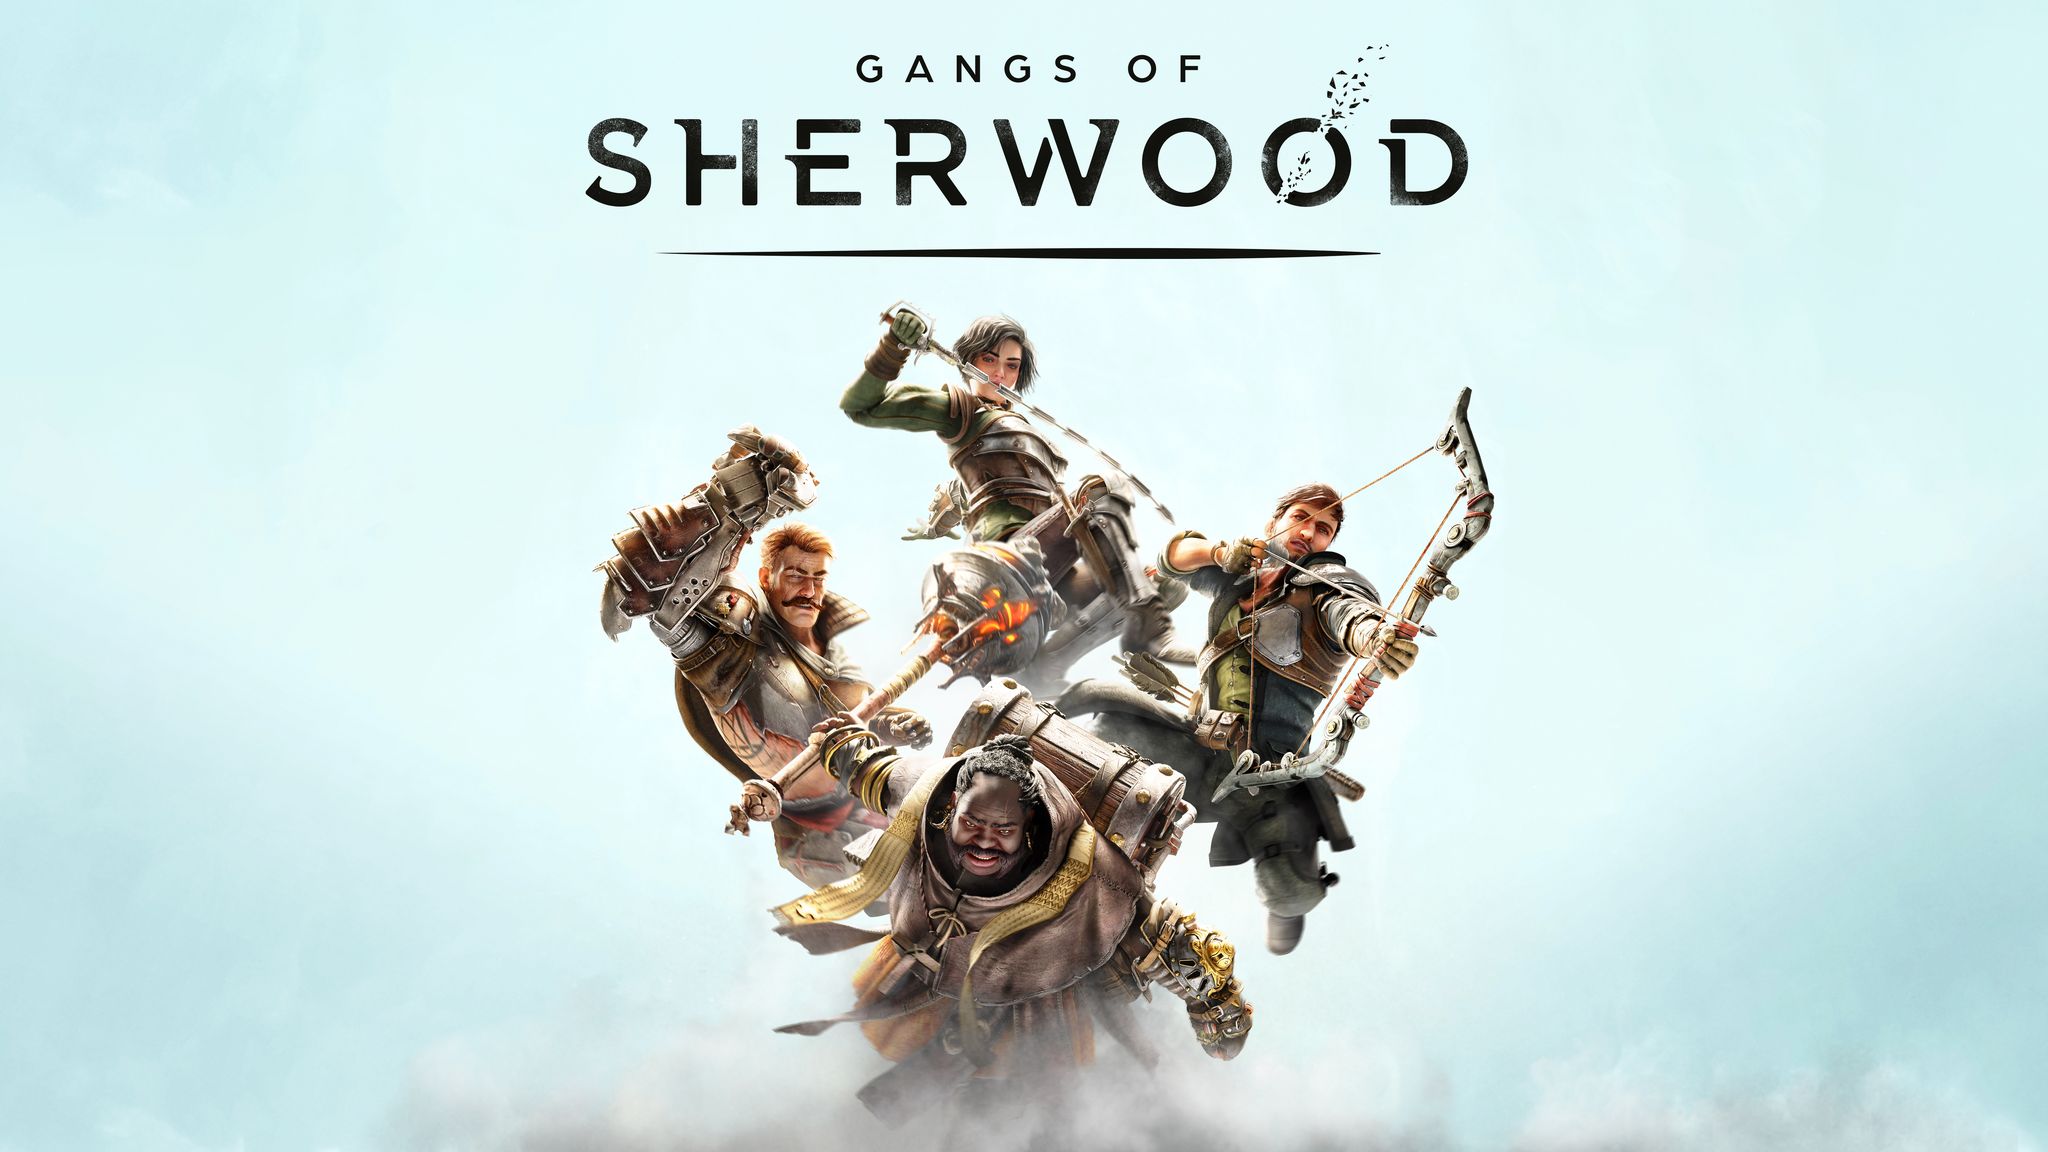 Gangs of Sherwood - Vorbestellung möglich